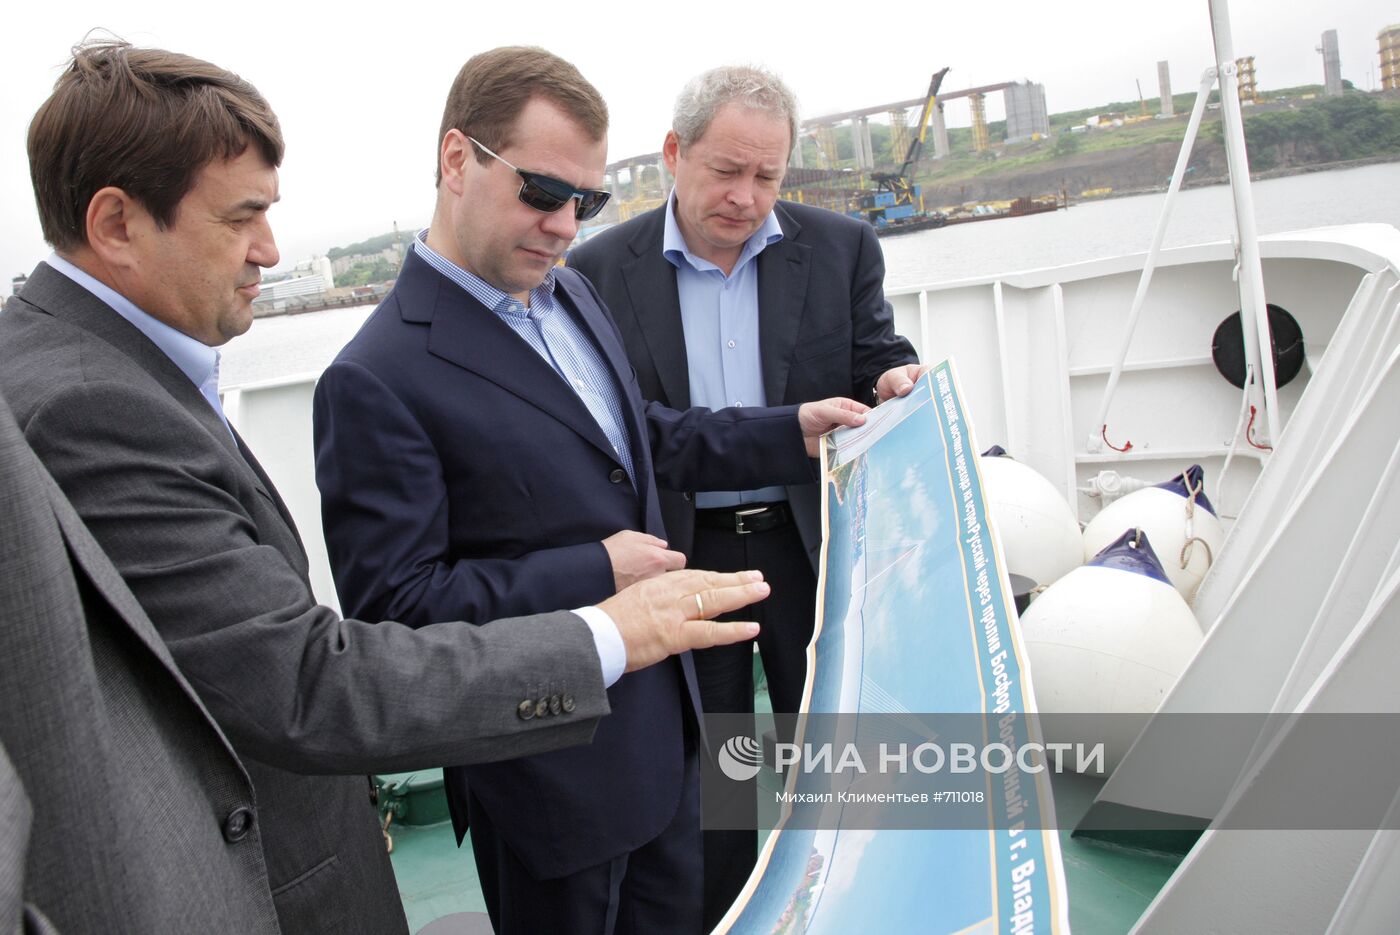 Д.Медведев посетил Владивосток в рамках рабочей поездки в ДФО